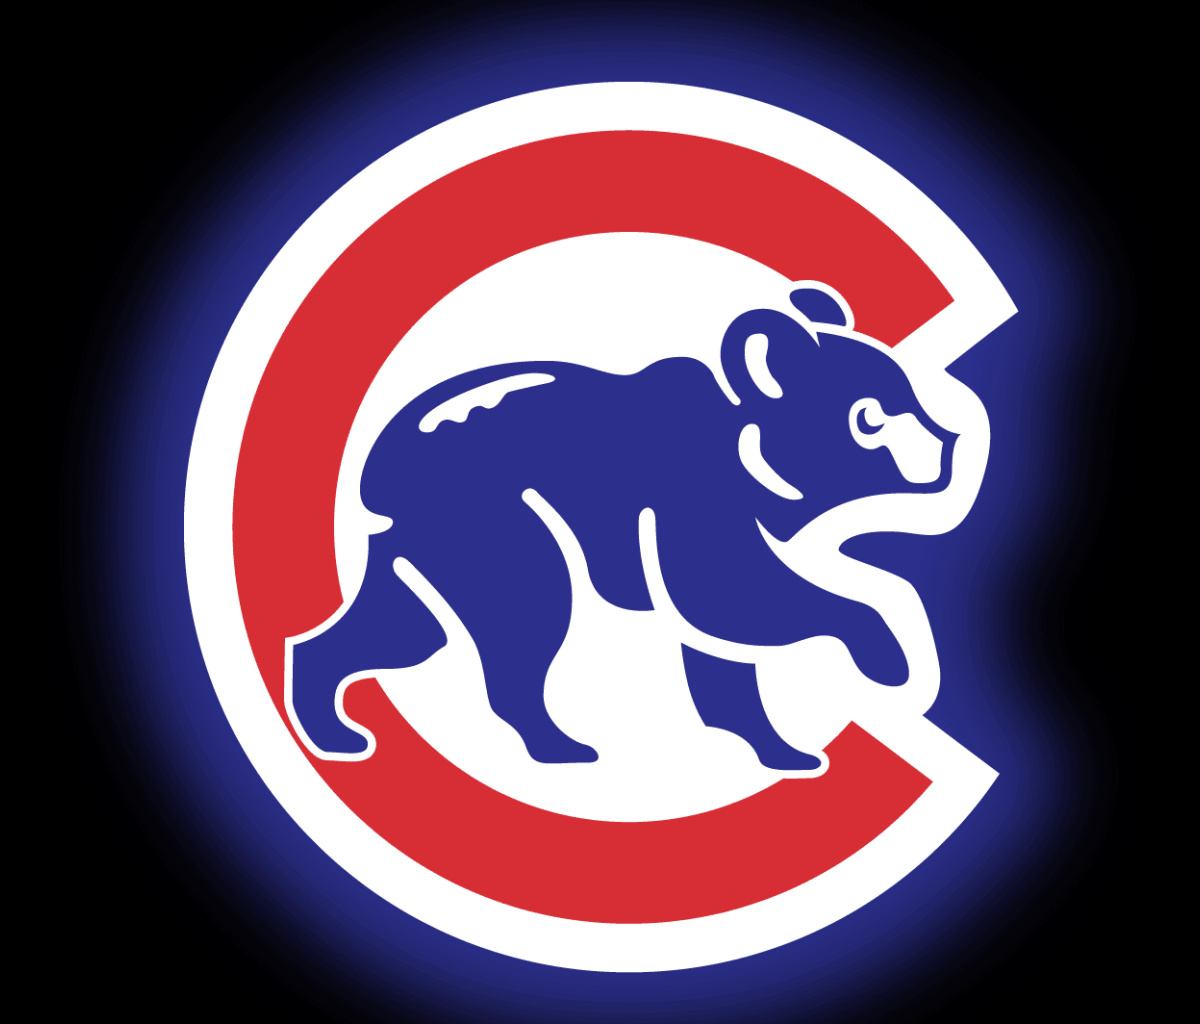 Chicago Cubs Baseball Team wallpaper 1200x1024